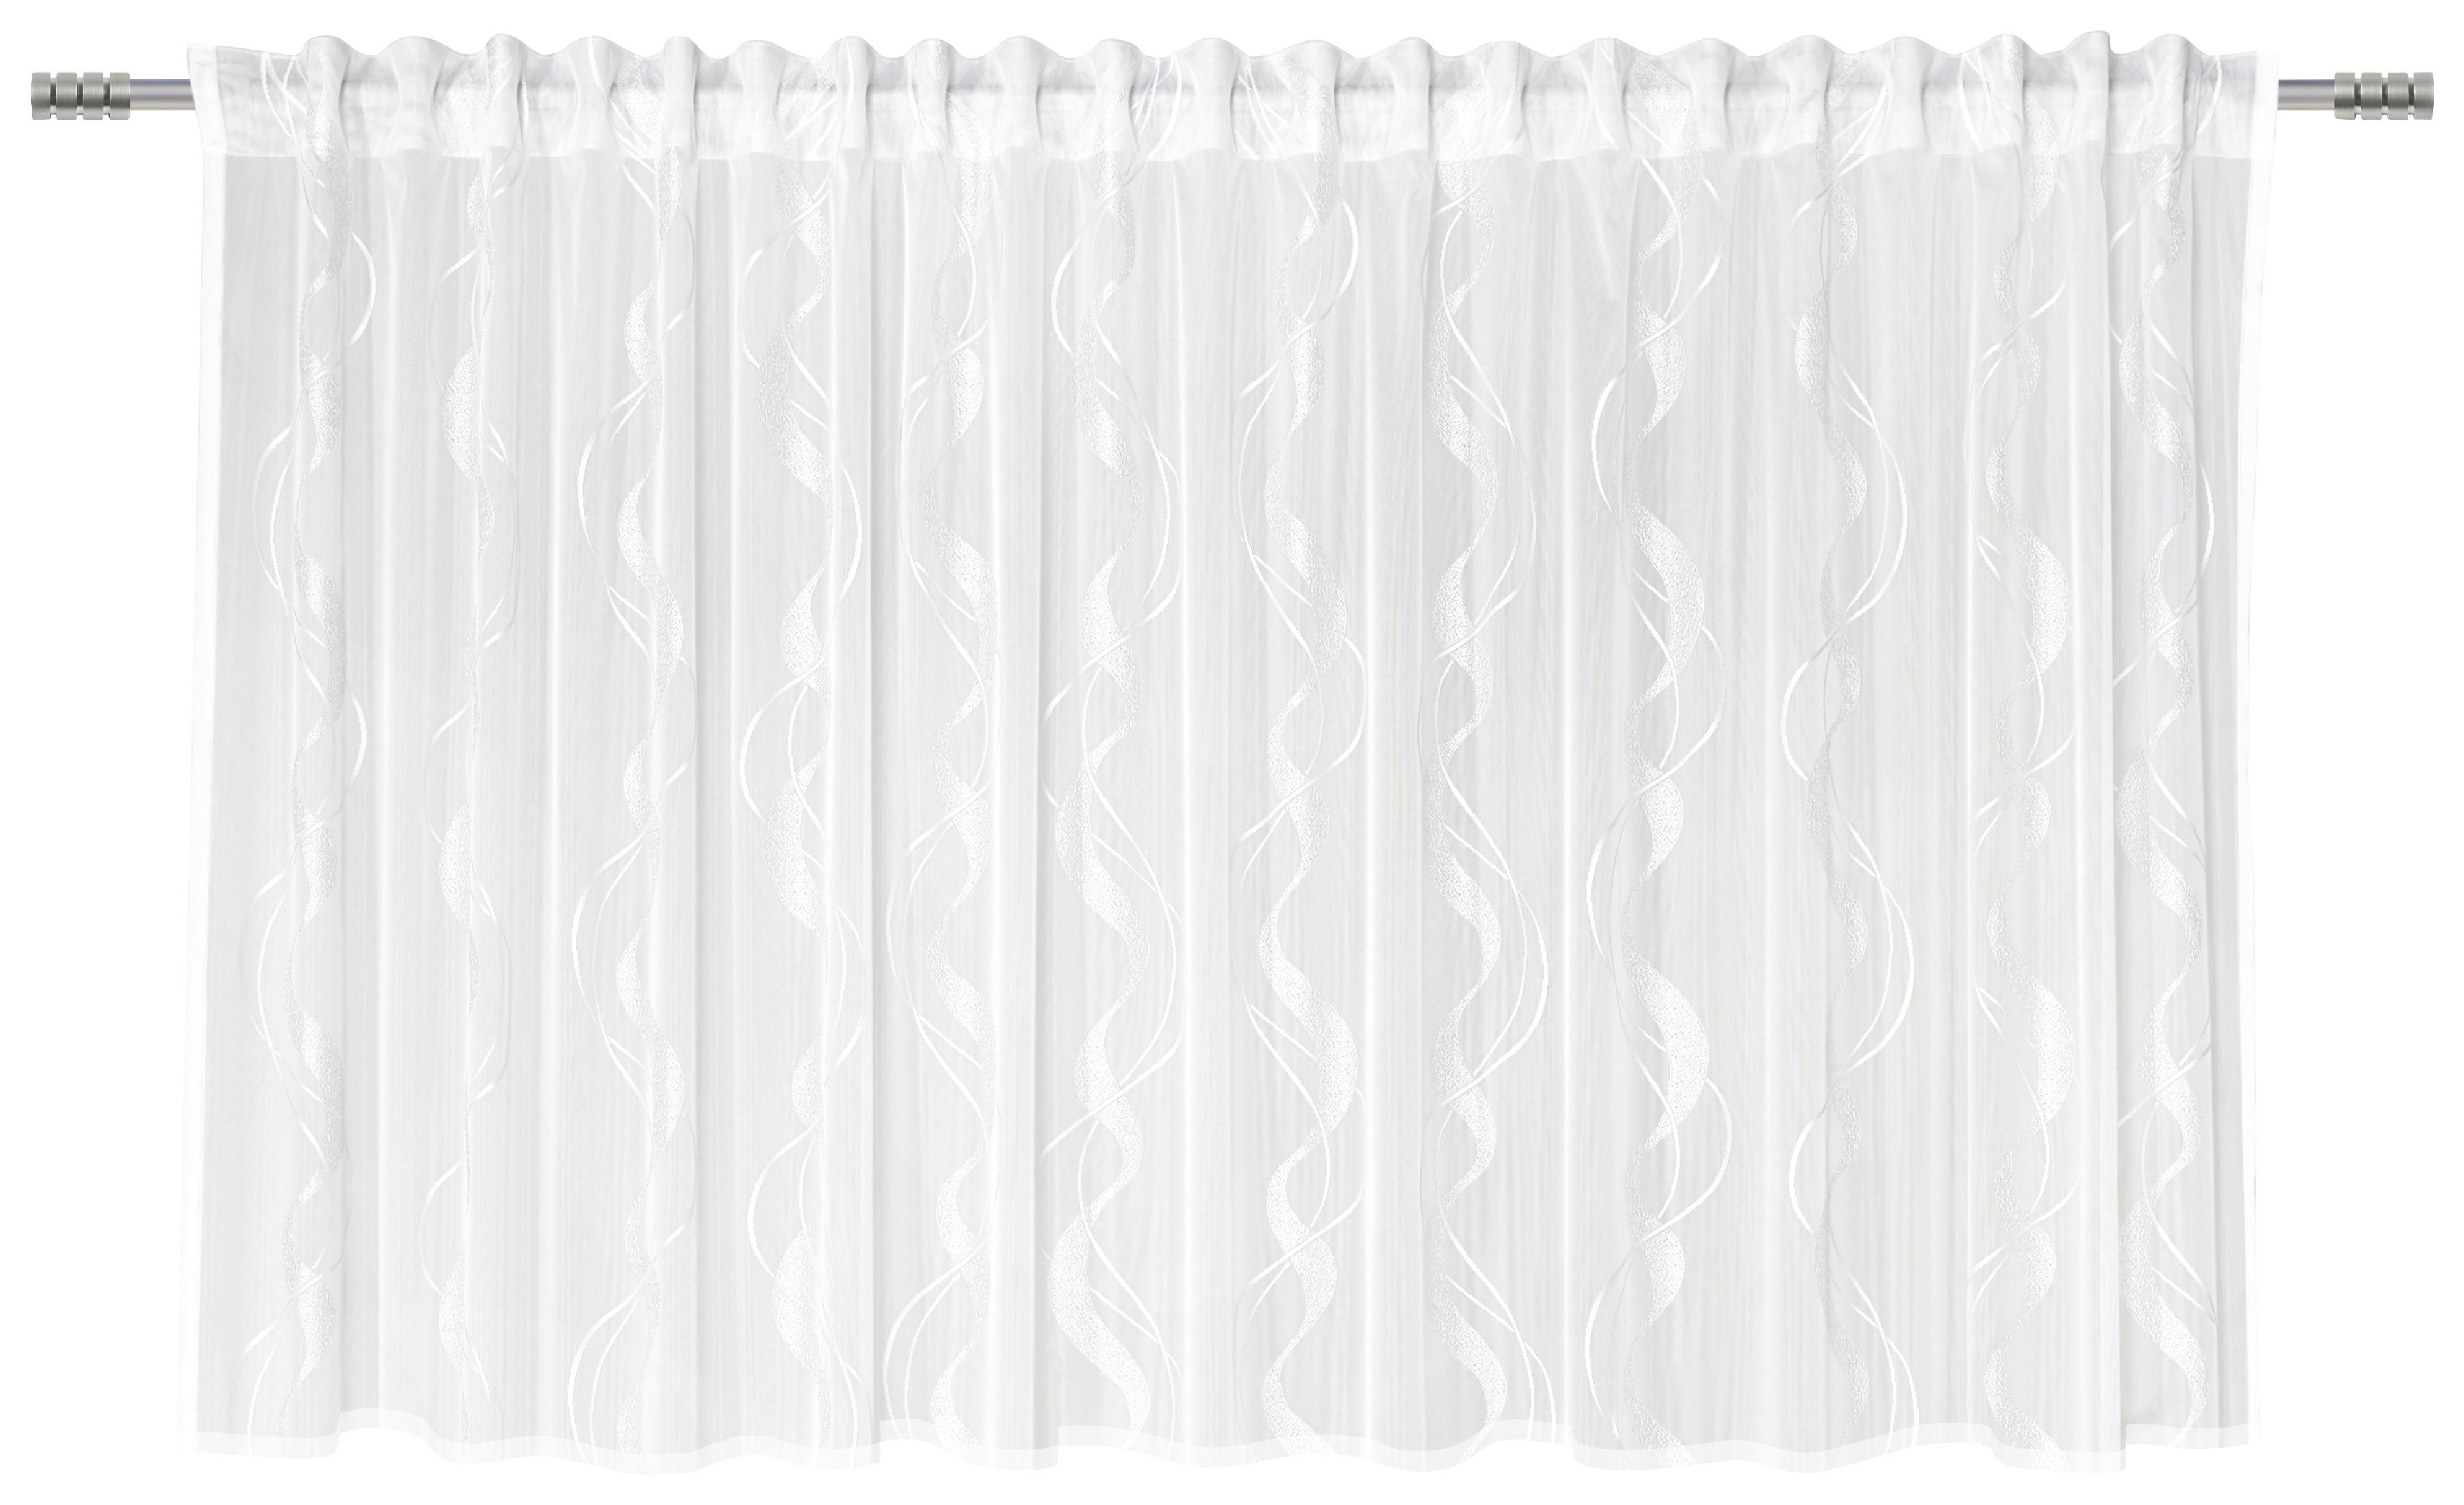 Készfüggöny Wave Store 300/145cm - Fehér, Textil (300/145cm) - Modern Living